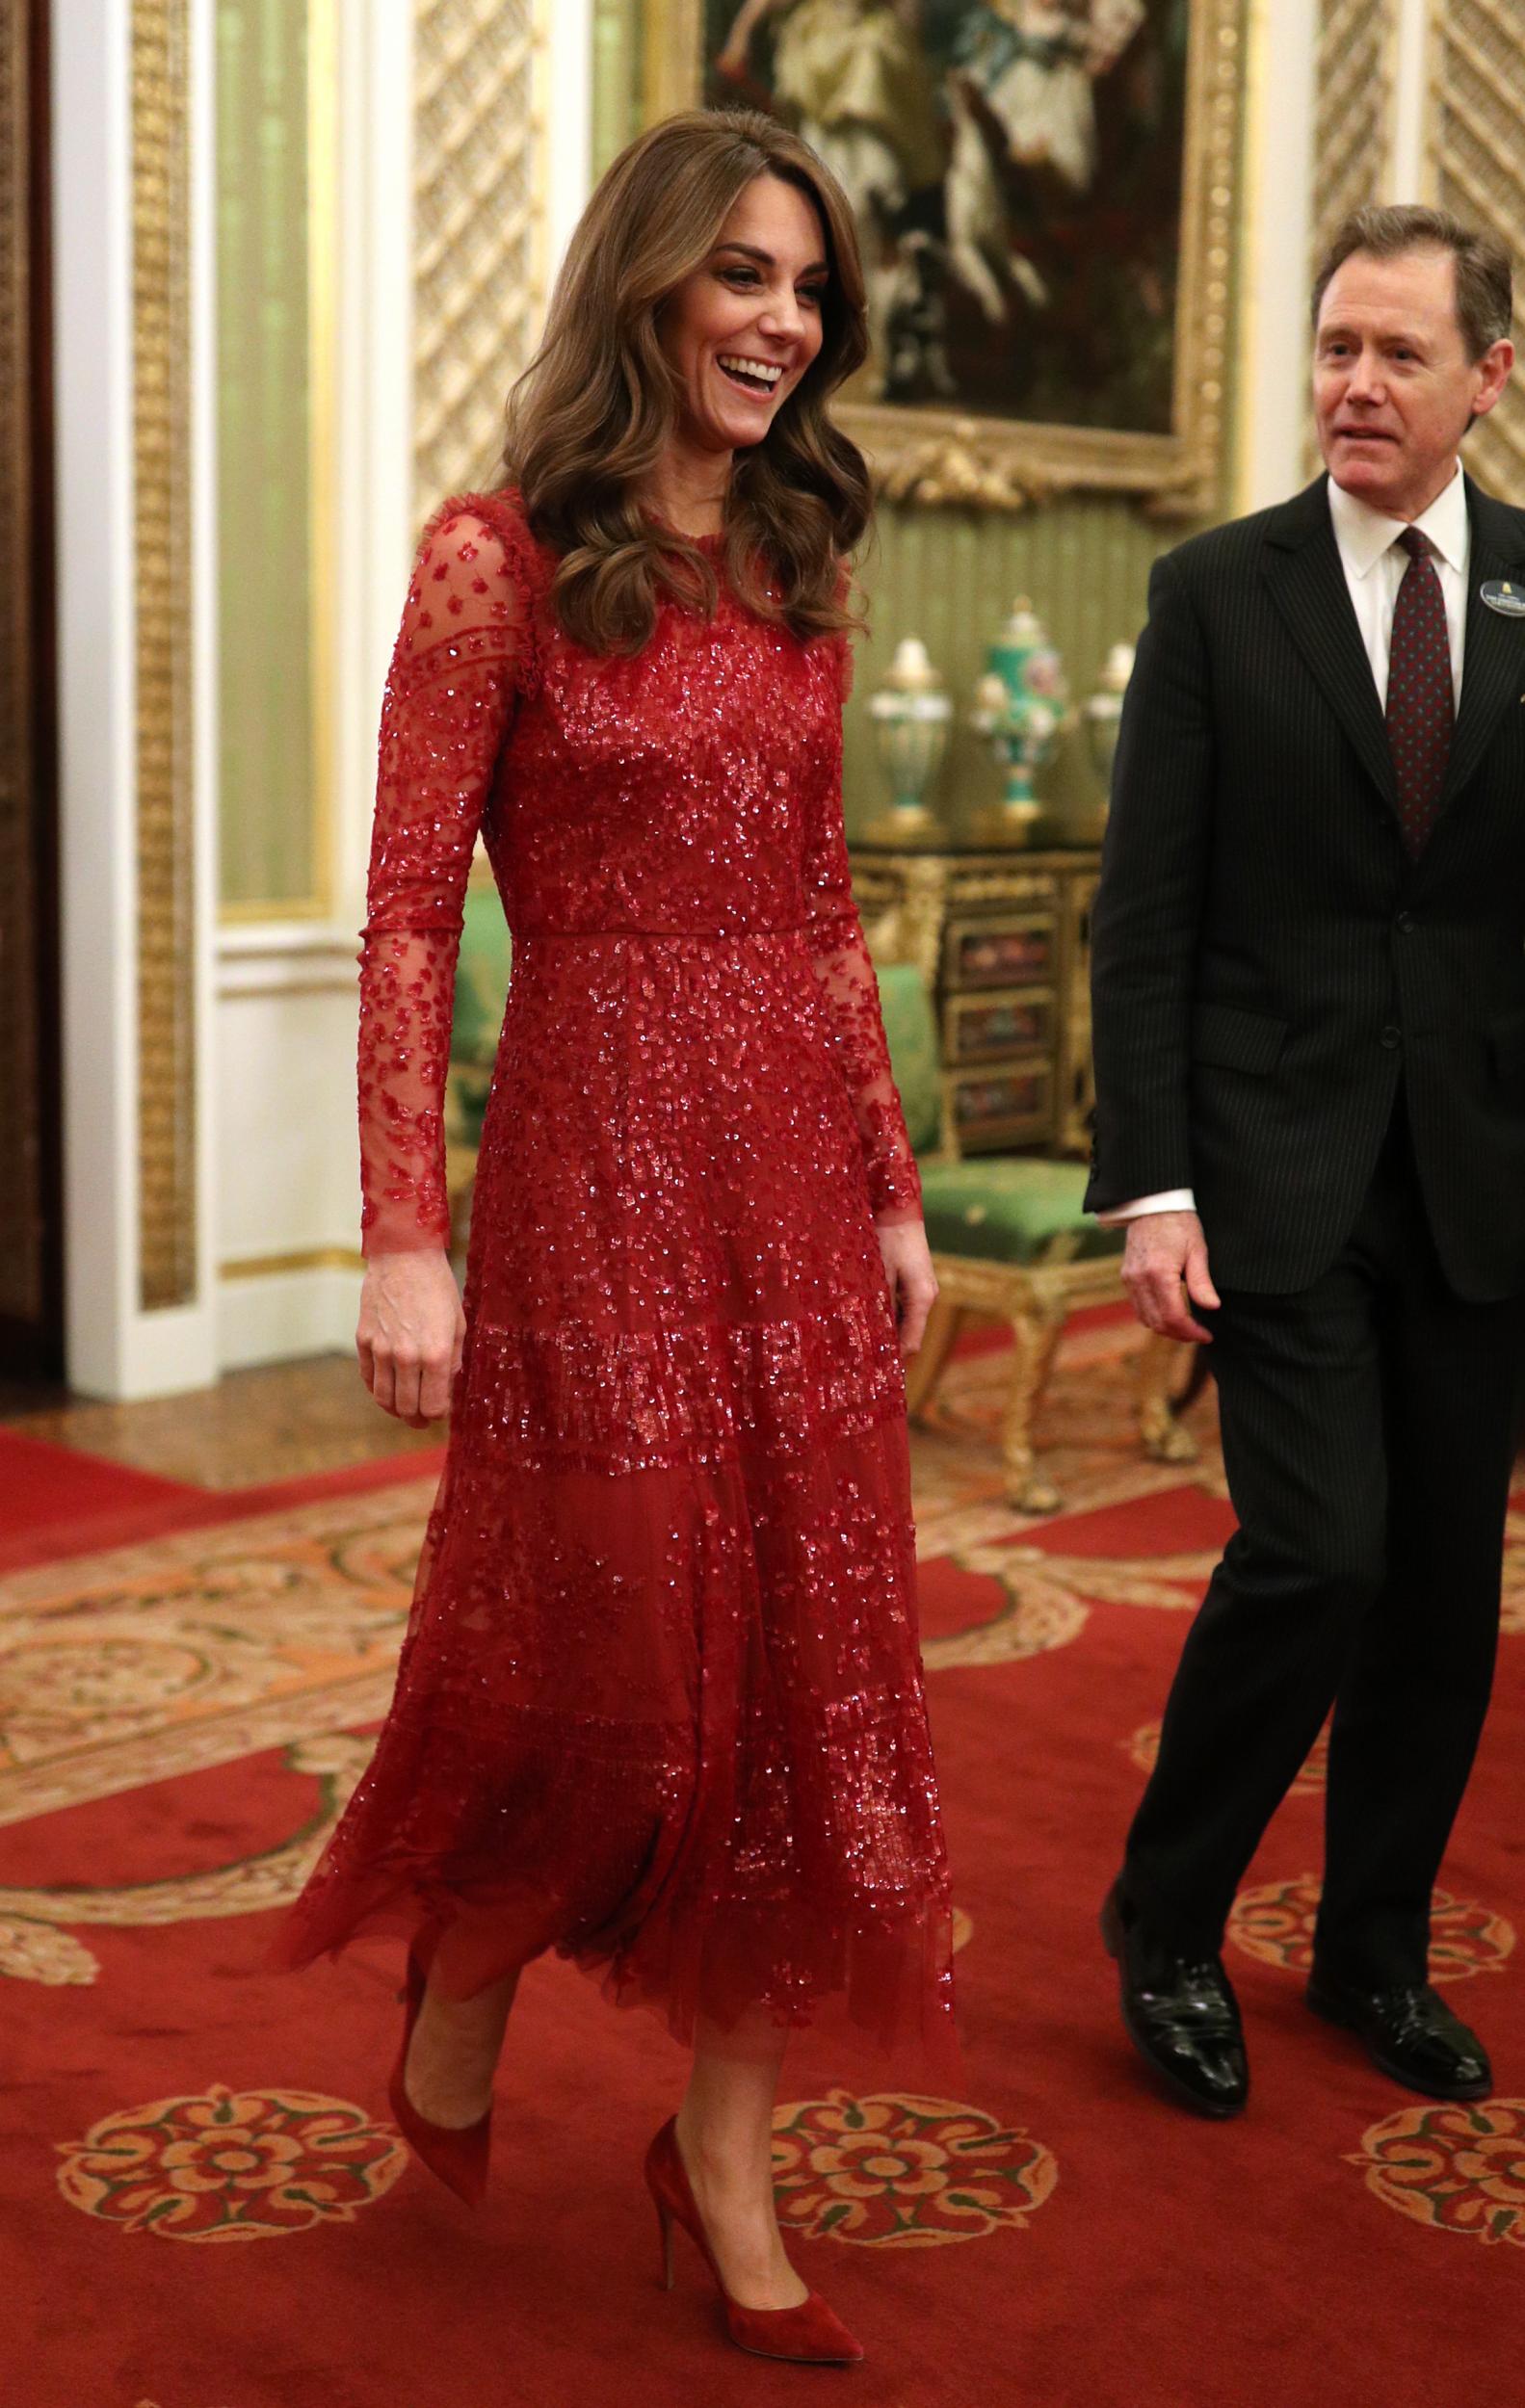 Принц Уильям и Кейт Миддлтон на торжественном приеме в Букингемском дворце